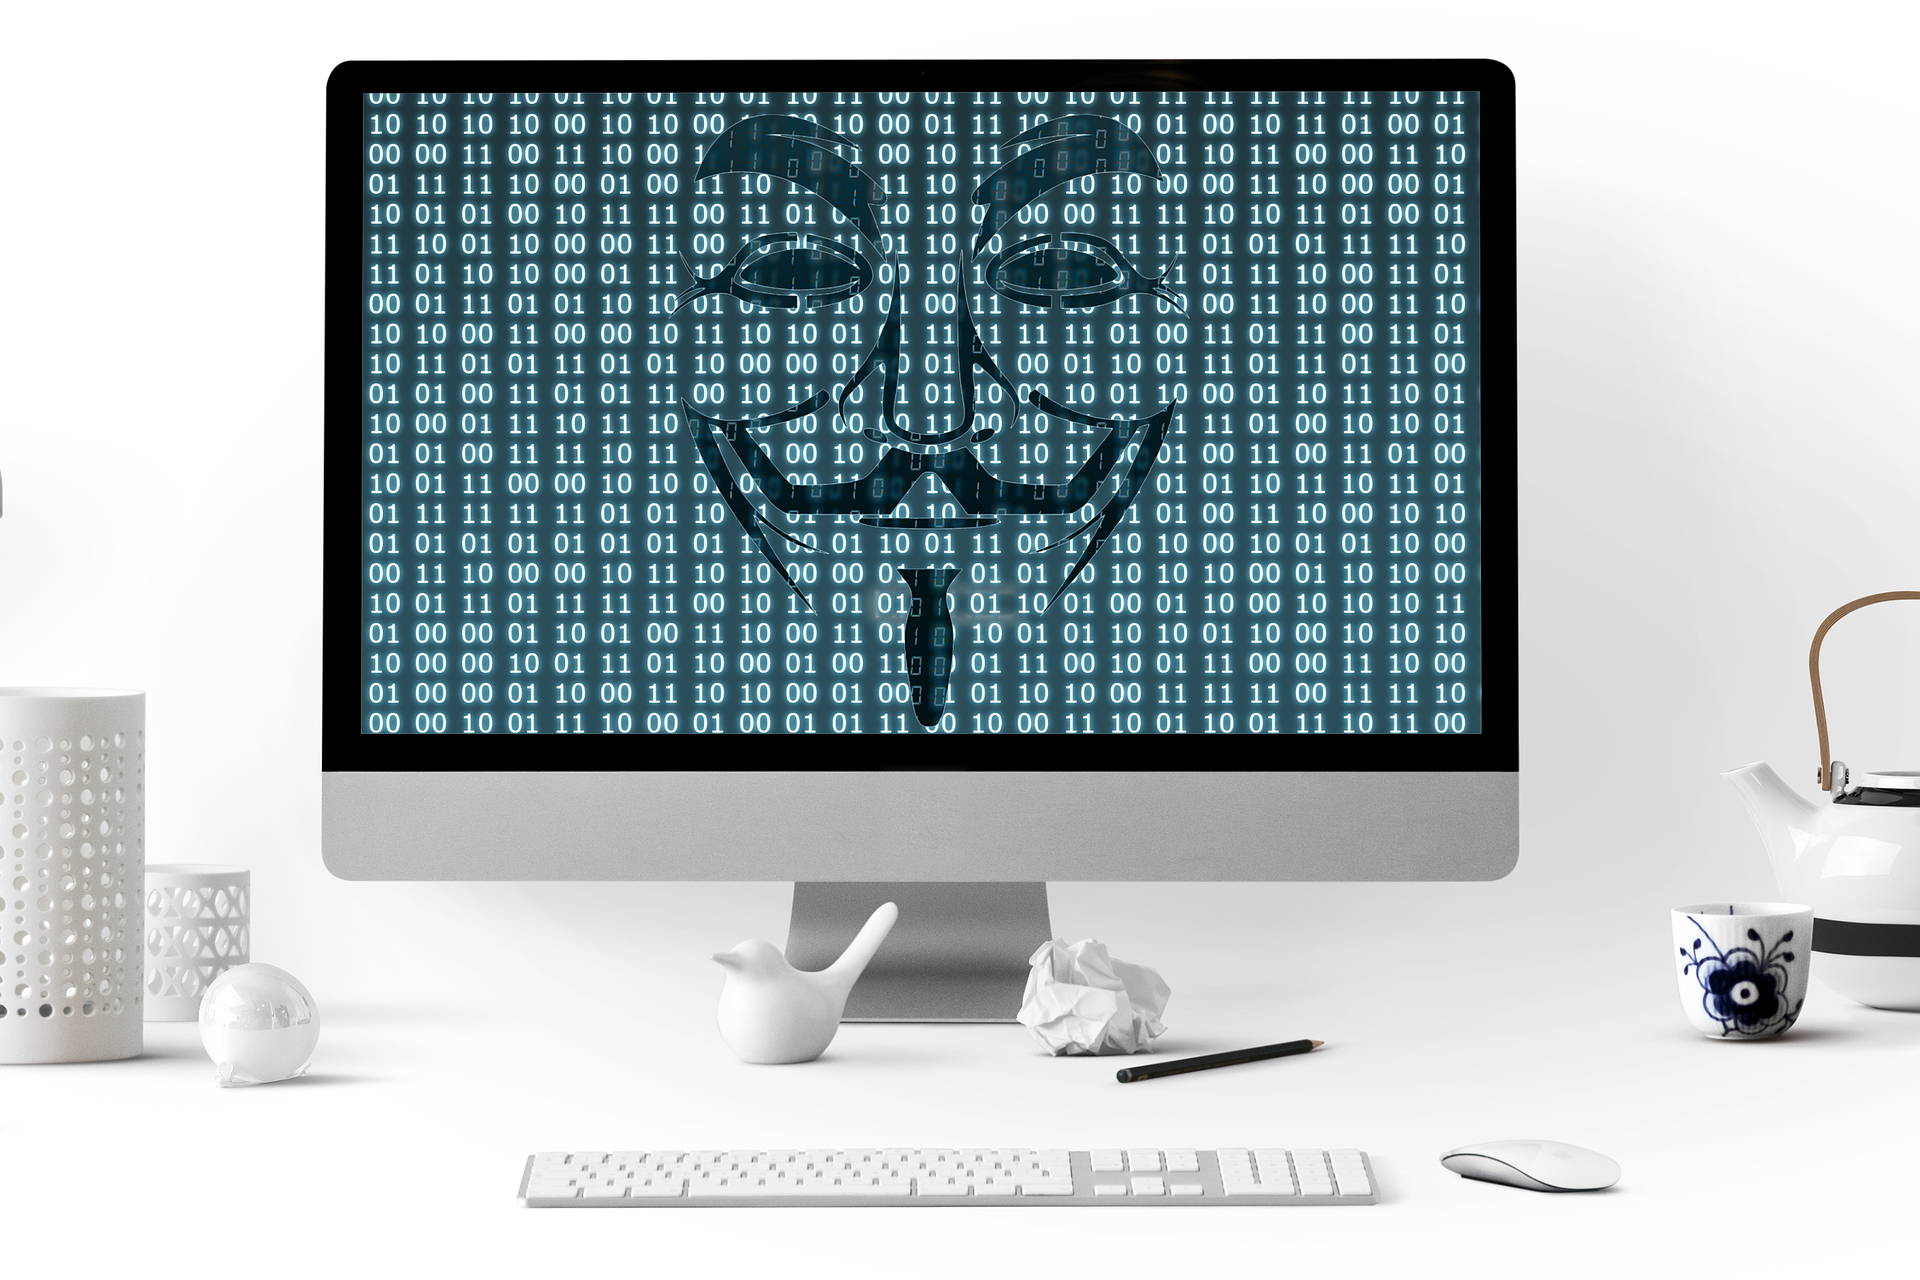 Hacker hackte einen Computer über eine Zero-Day-Schwachstelle